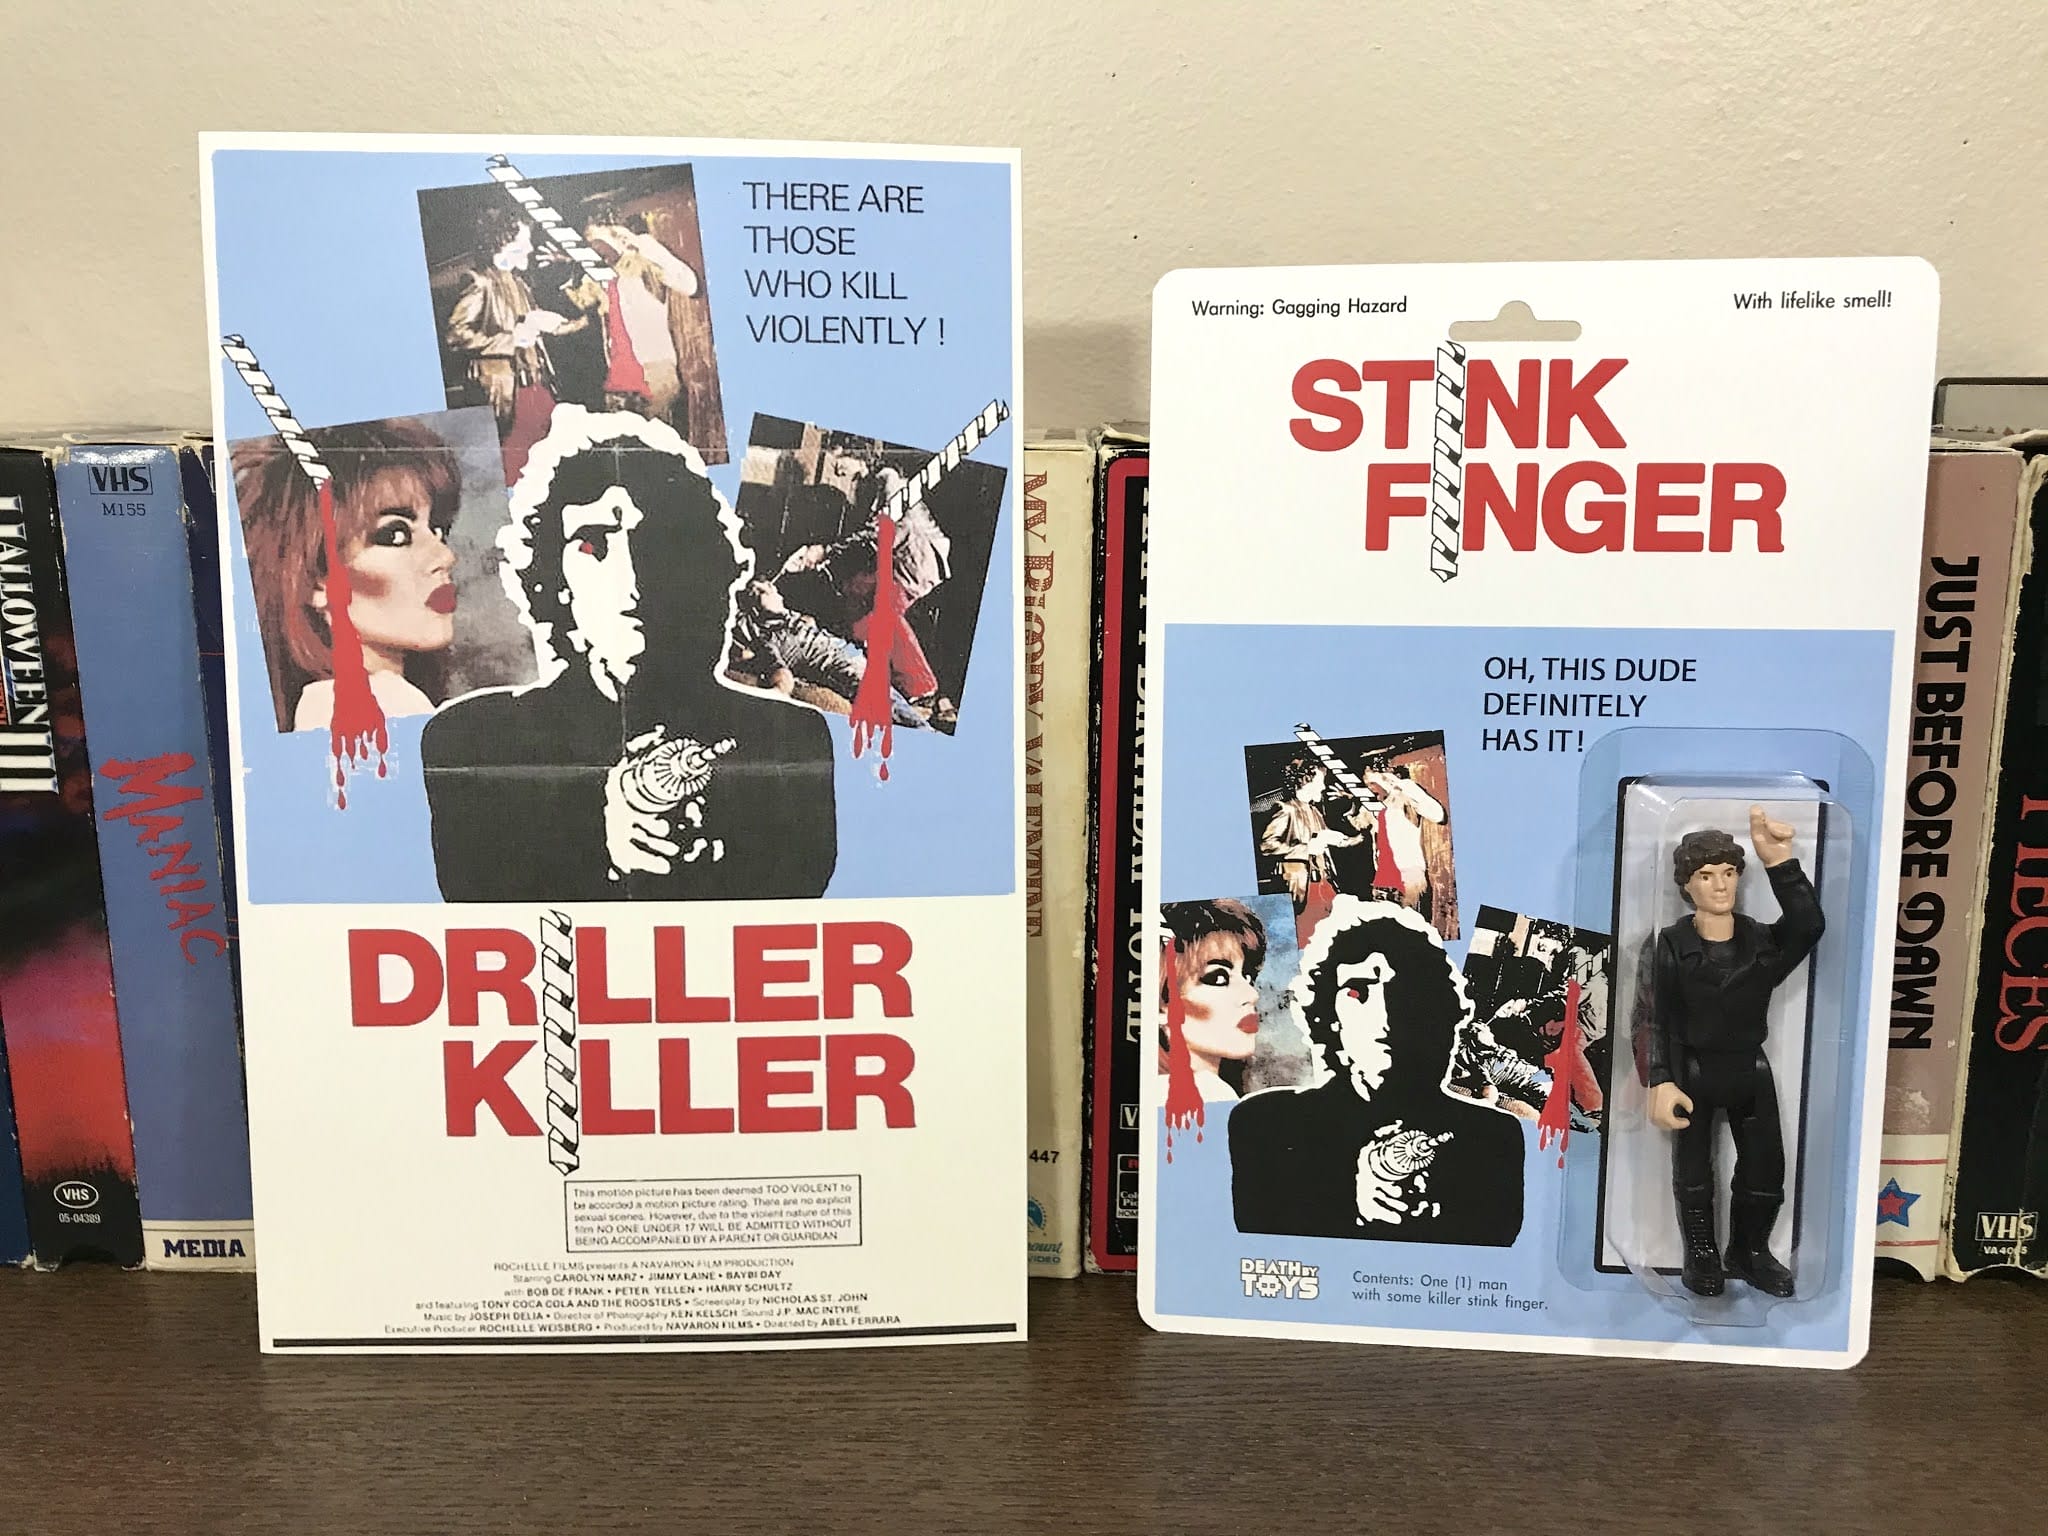 Driller Killer, affiche du film original, le tueur porte une mèche de perceuse sur le doigt.
Transformé en Stink Finger (doigt qui pue, NDLR)